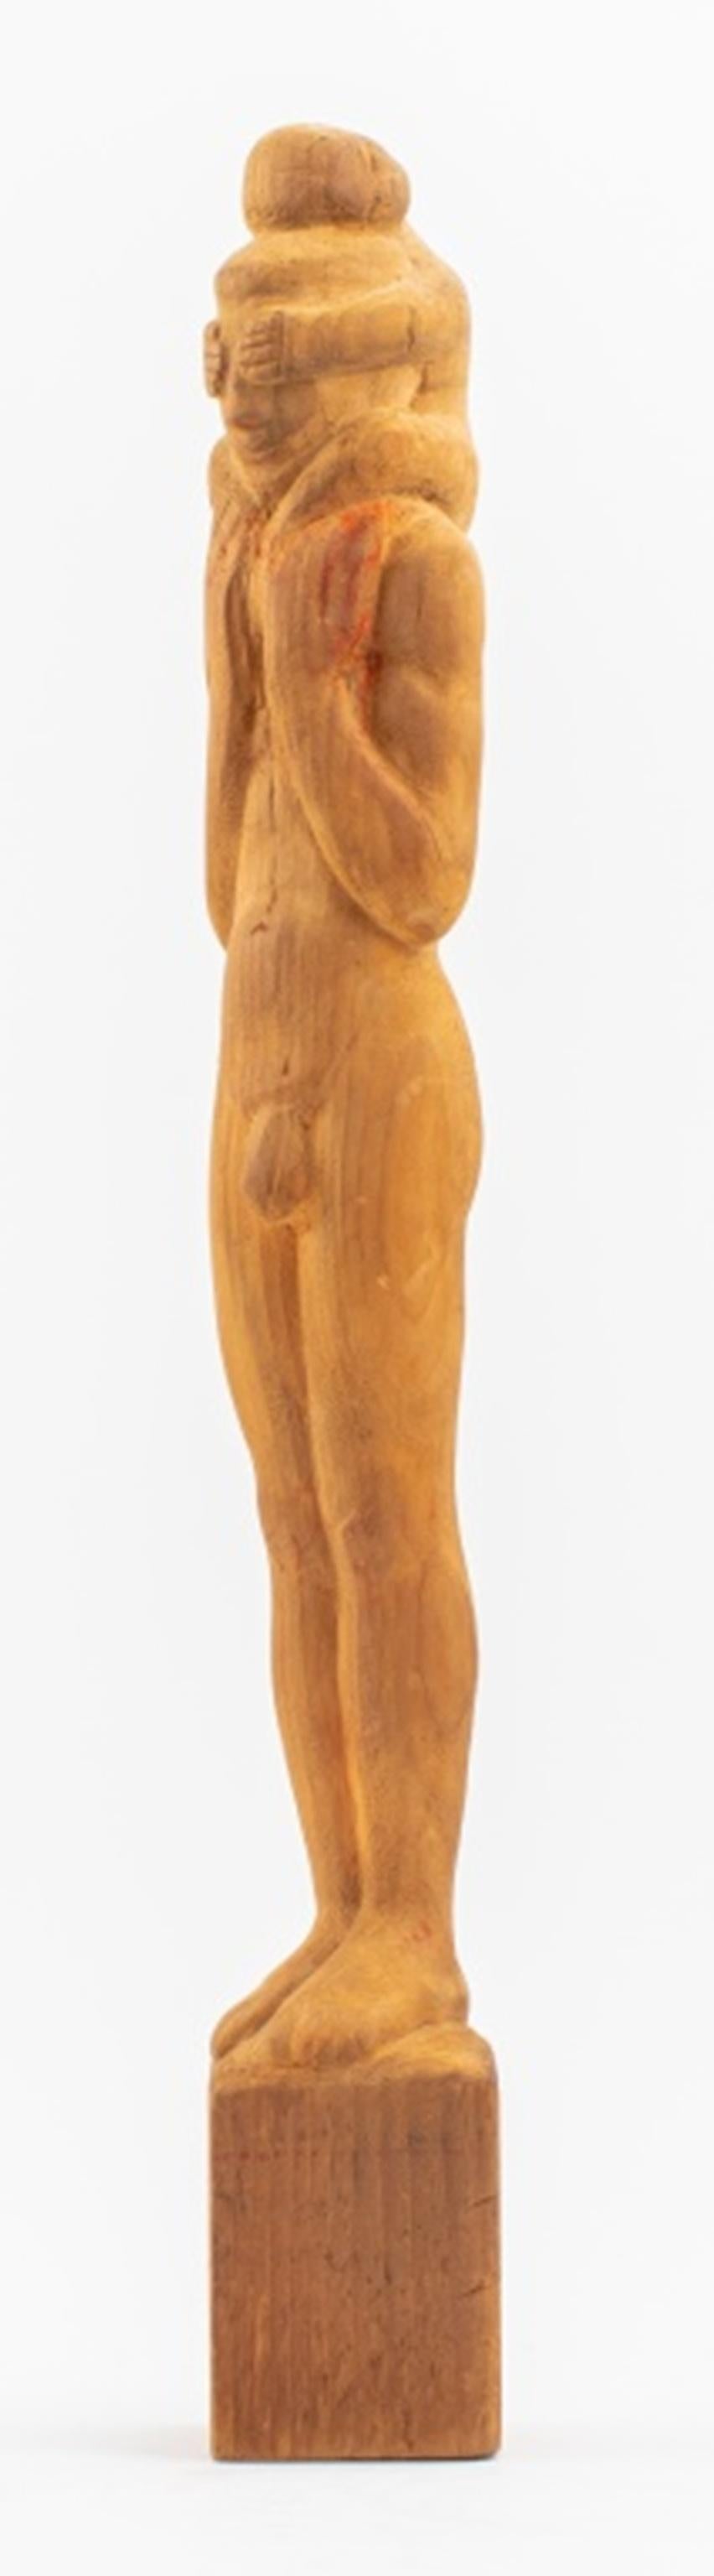 Americana Folk Art holzgeschnitzte Skulptur, die einen stehenden nackten Mann mit einem Kind auf den Schultern darstellt, das seine Augen bedeckt, offenbar unsigniert, erste Hälfte des 20. Jahrhunderts. In sehr gutem Vintage-Zustand. 

Händler: